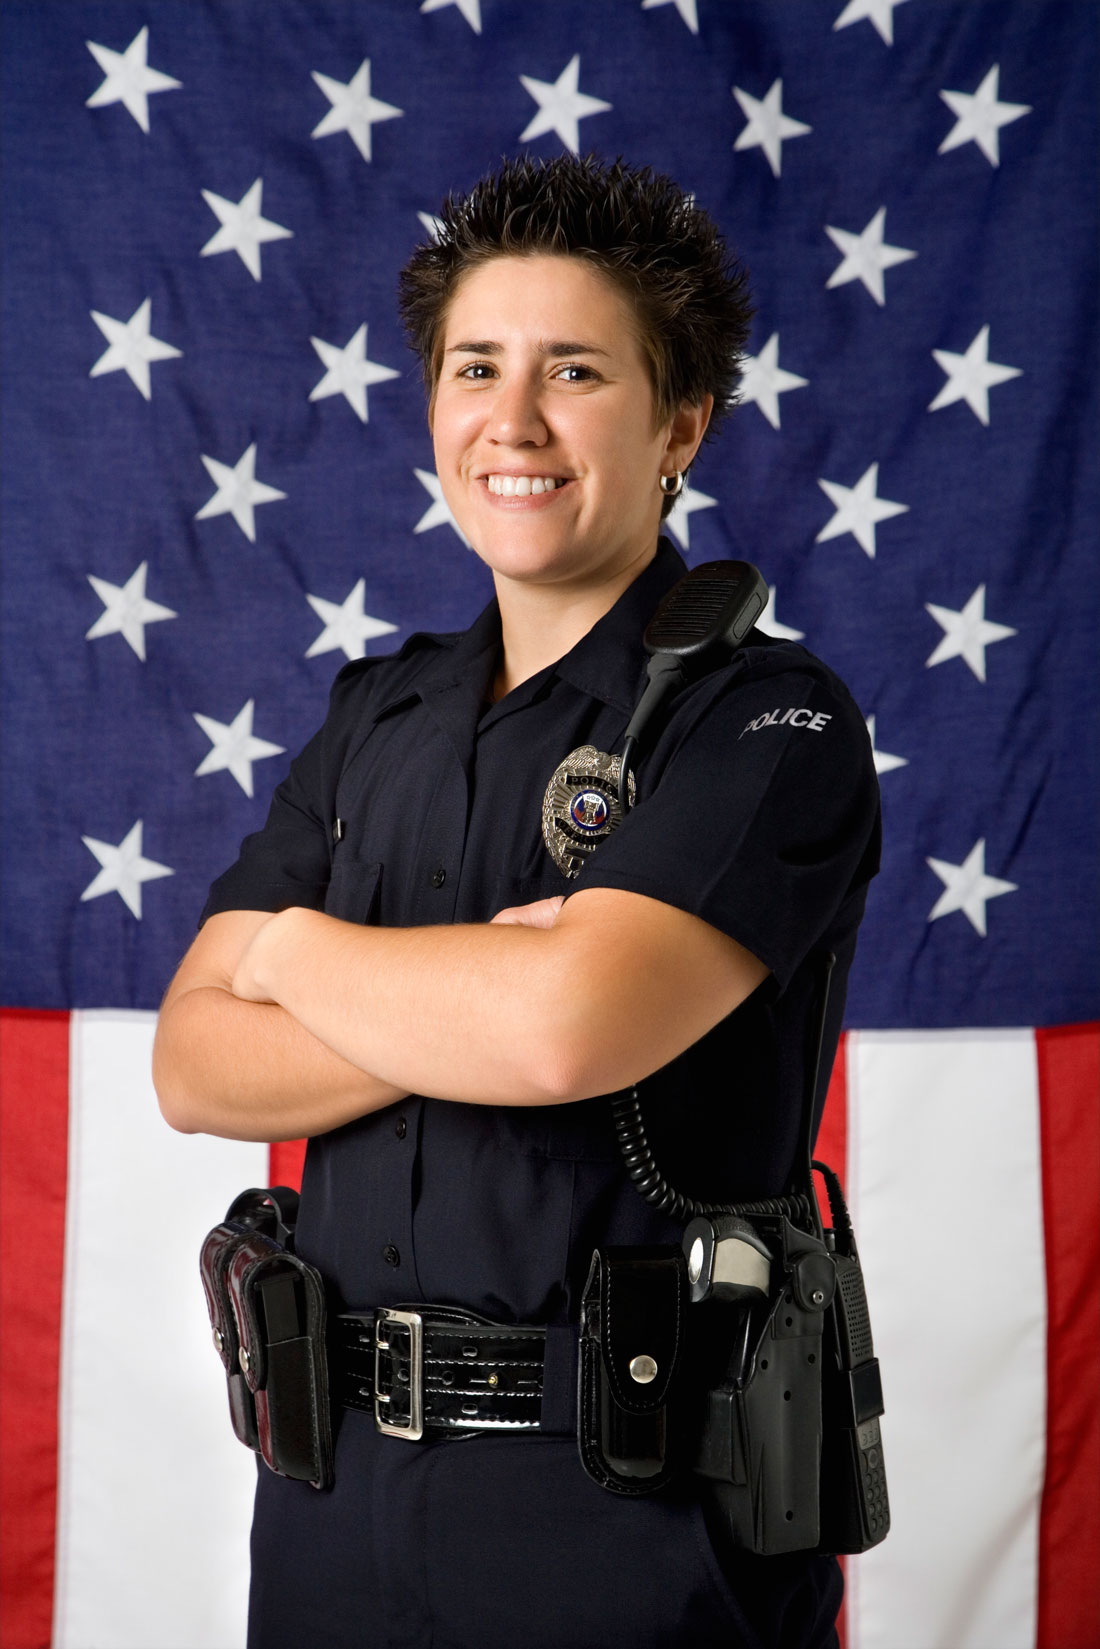 Policewoman and flag